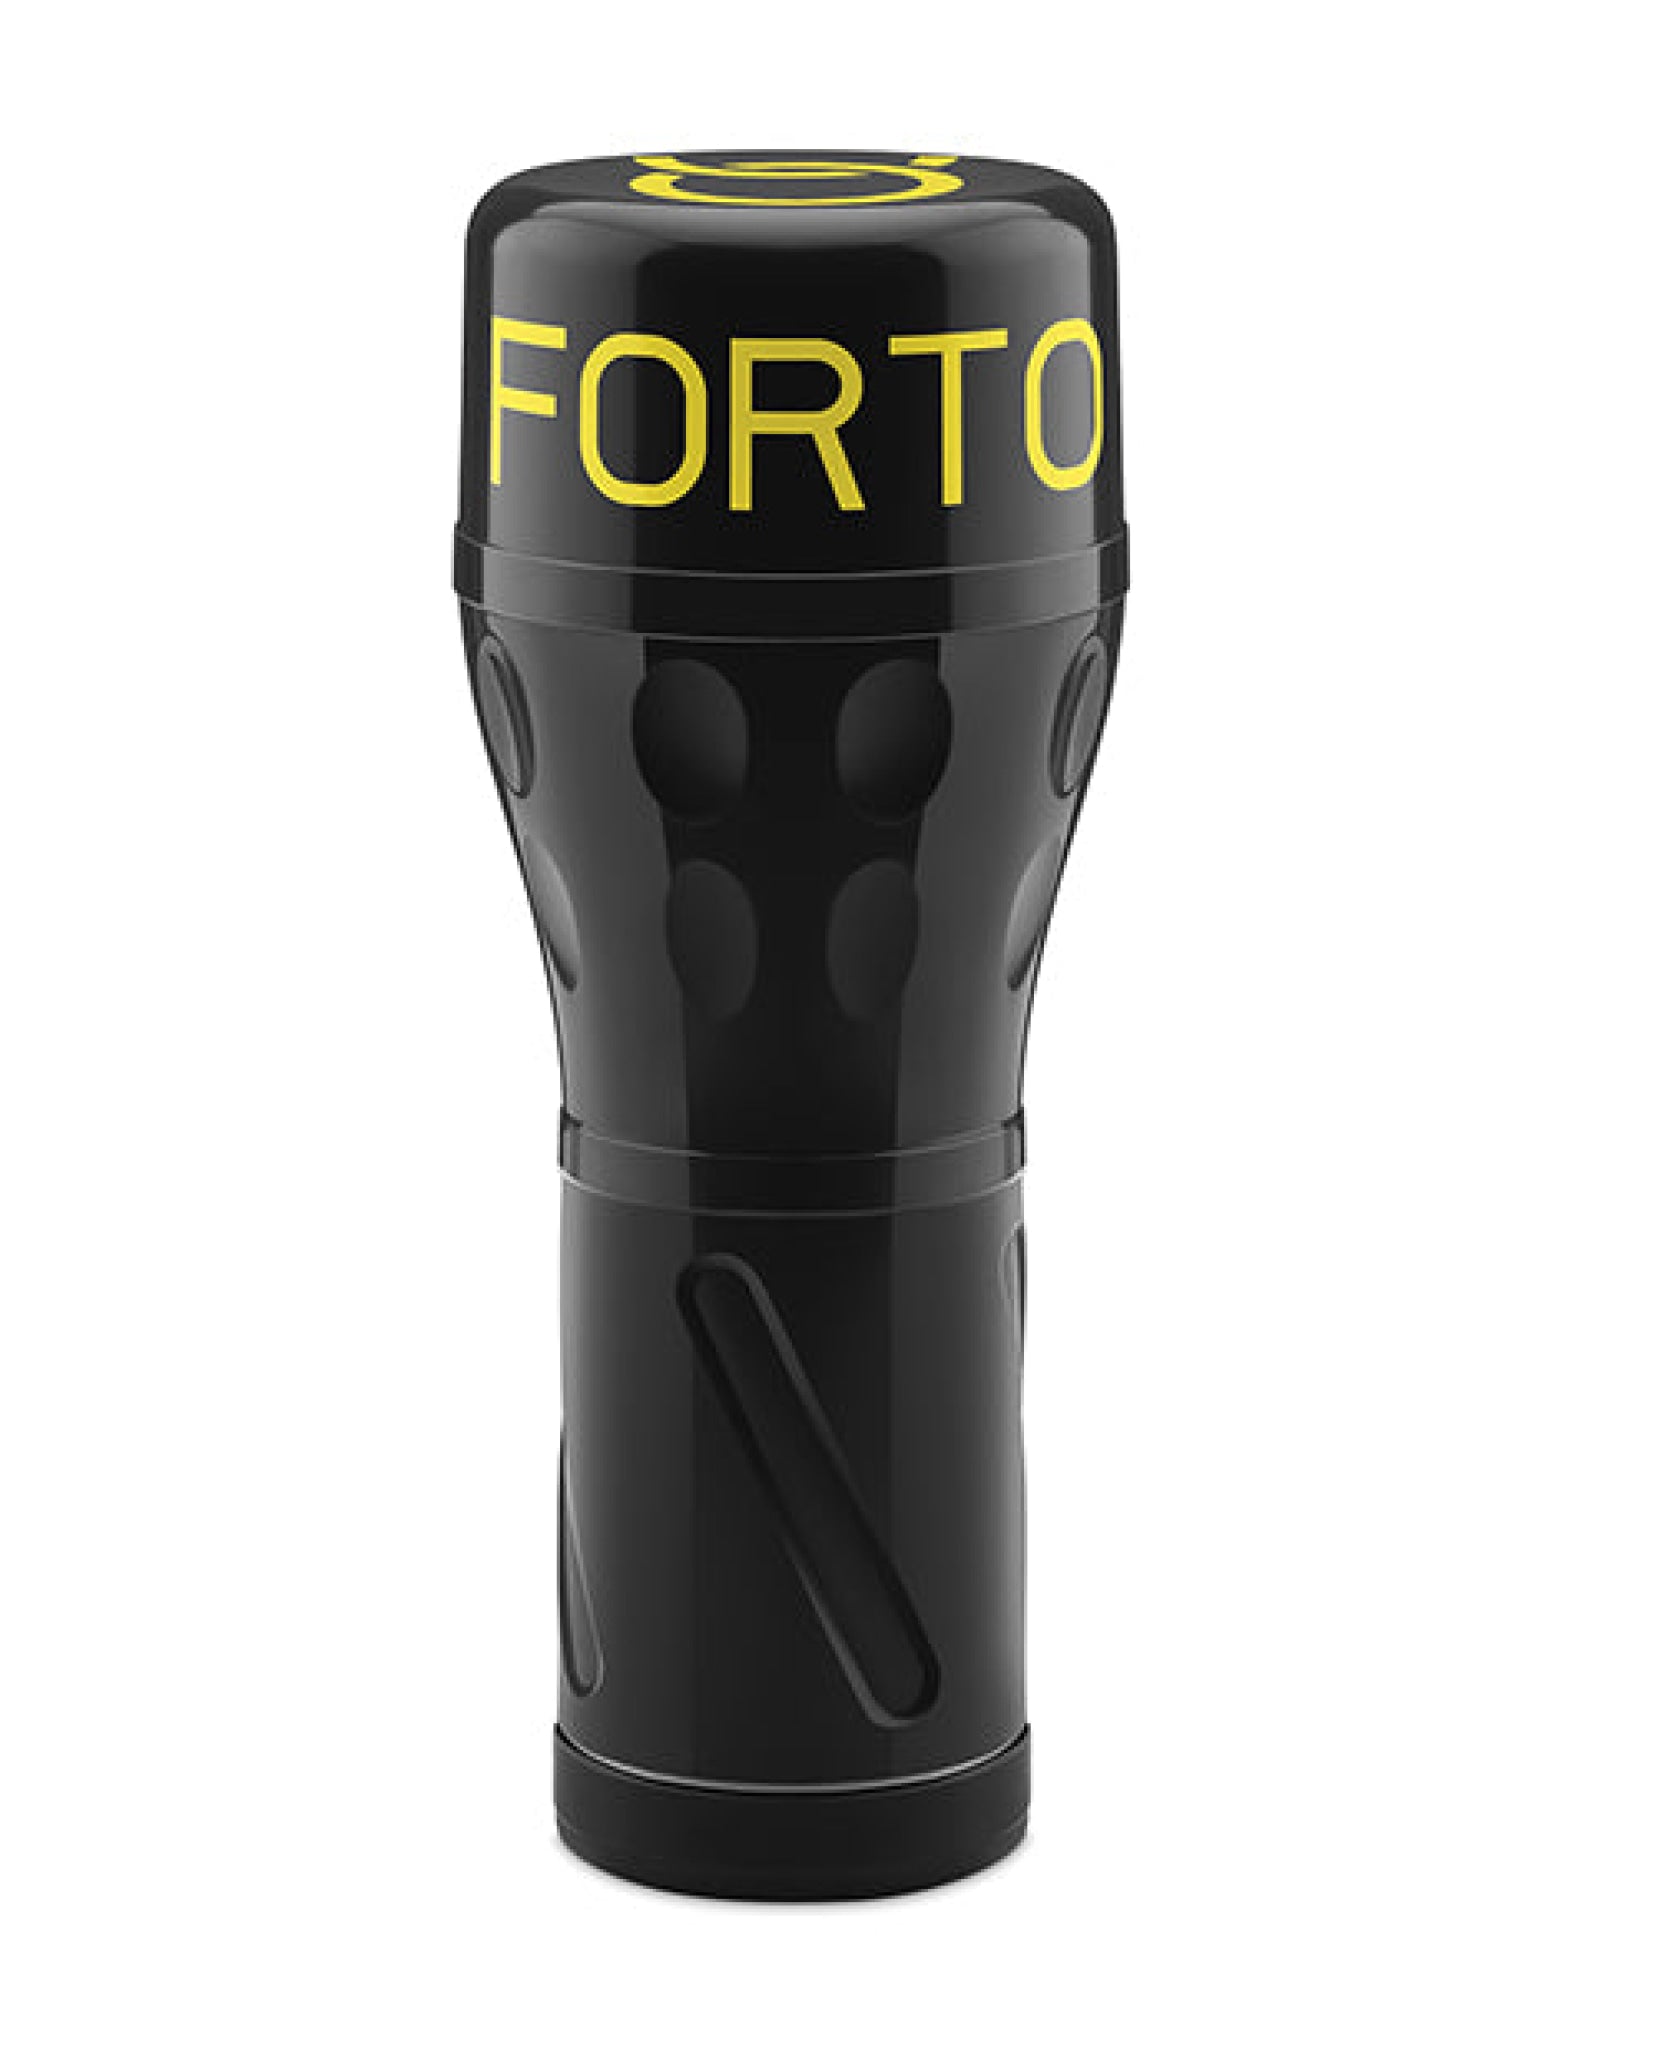 Forto Model V-20 Hard-Side Vagina Masturbator - Tan Vvole